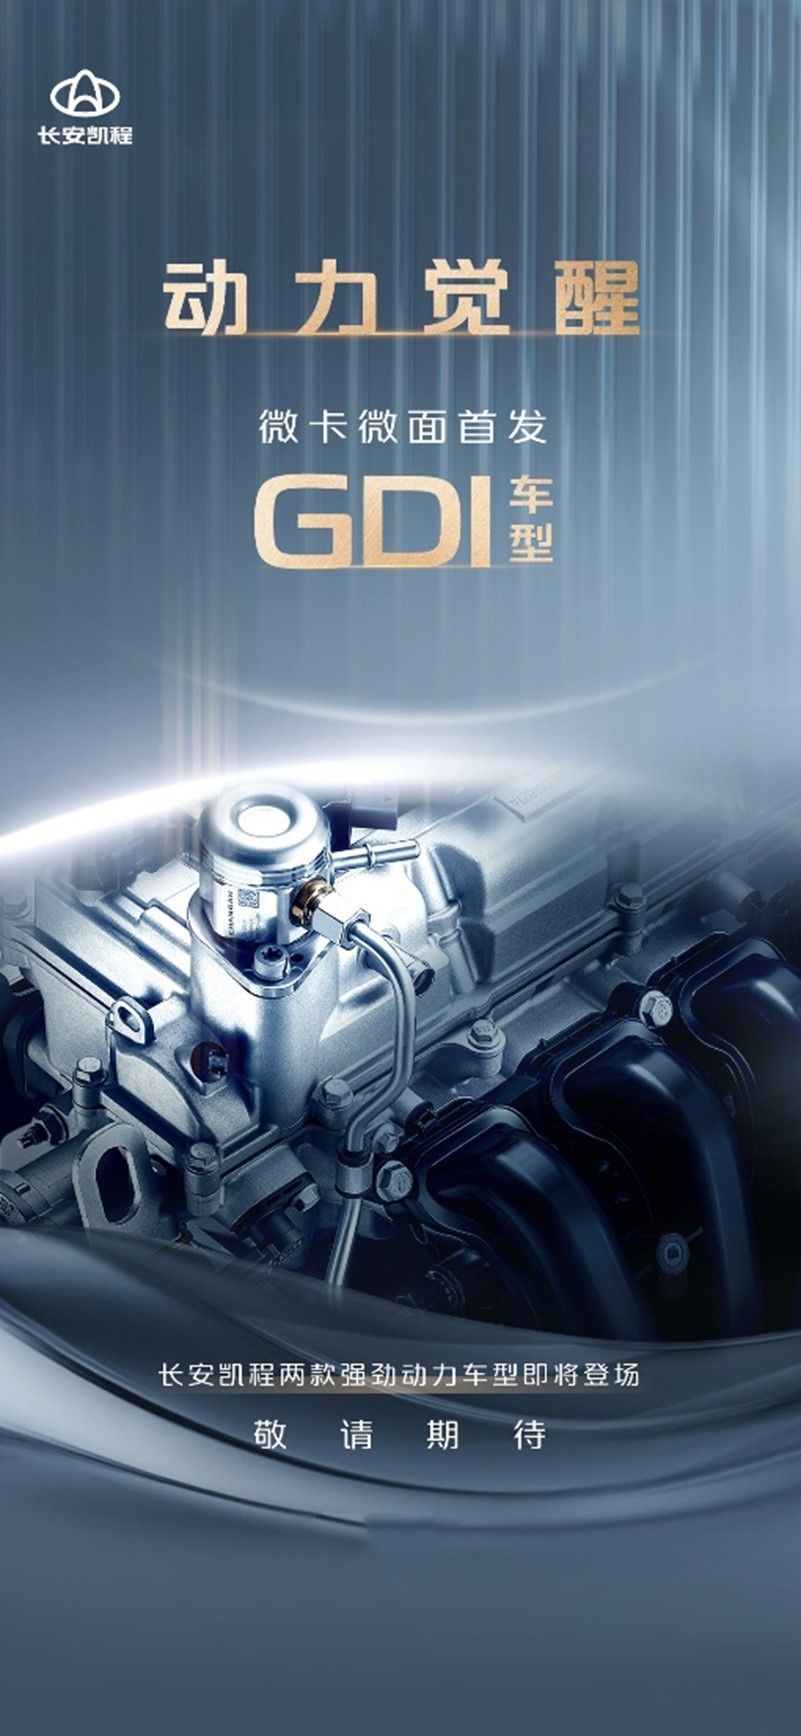 长安凯程即将发布两款搭载GDI动力车型。 长安凯程供图 华龙网发